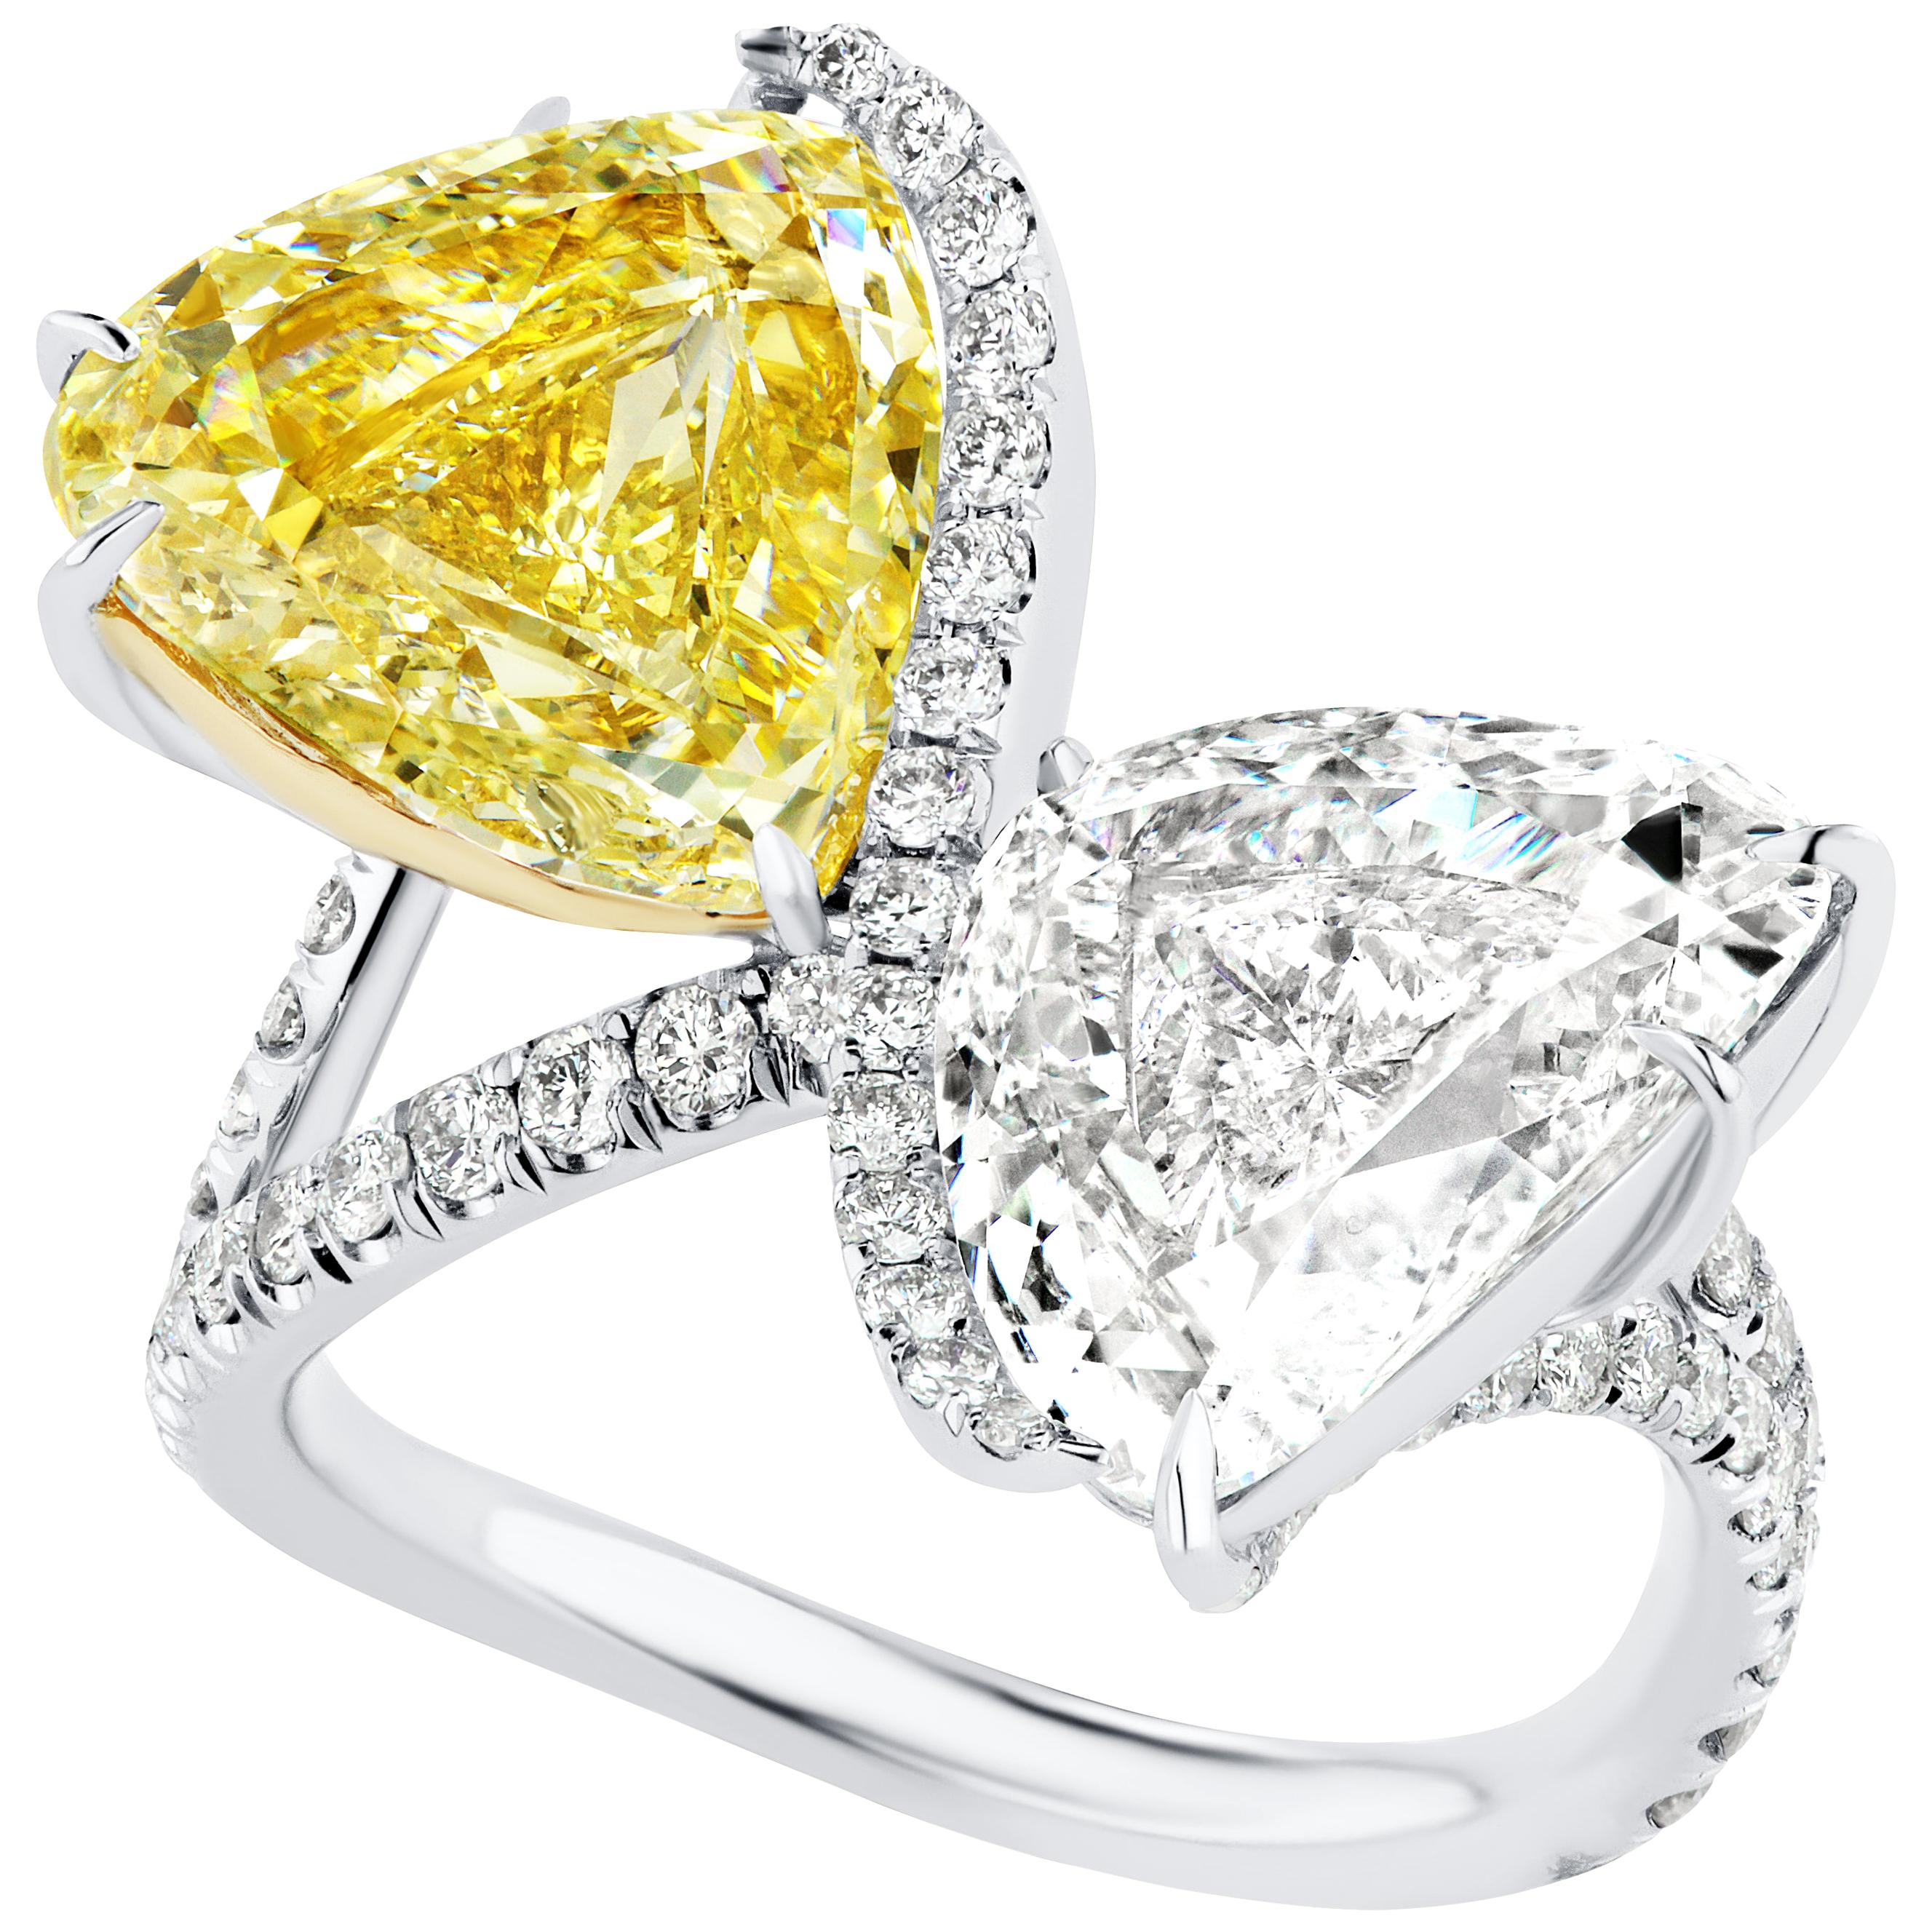 5.25 Carat Triangular Shaped Yellow and White Diamond Two-Stone Toi et Moi Ring